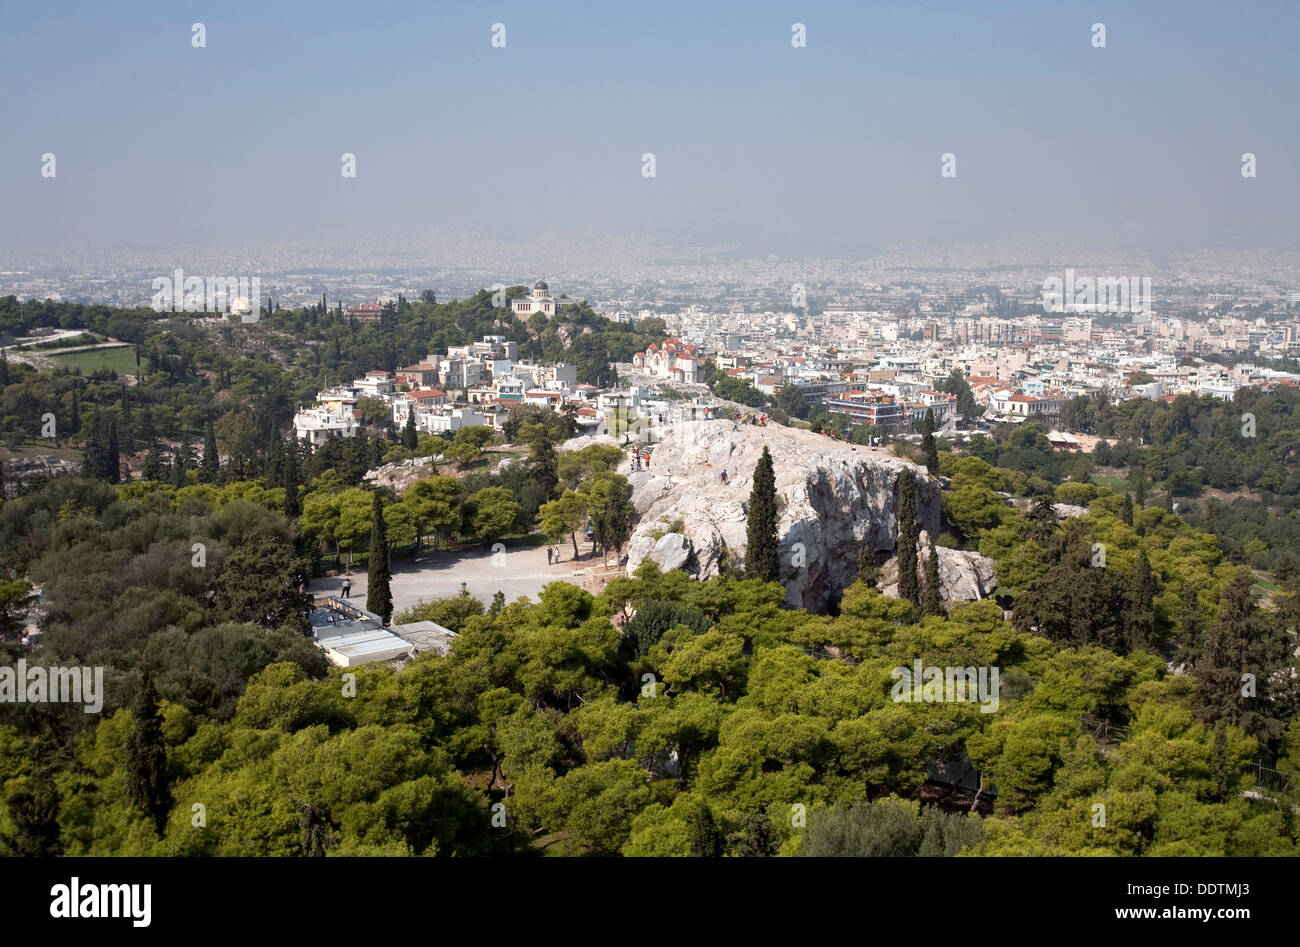 El areópago (colina de Marte), Atenas, Grecia. Artista: Samuel Magal Foto de stock